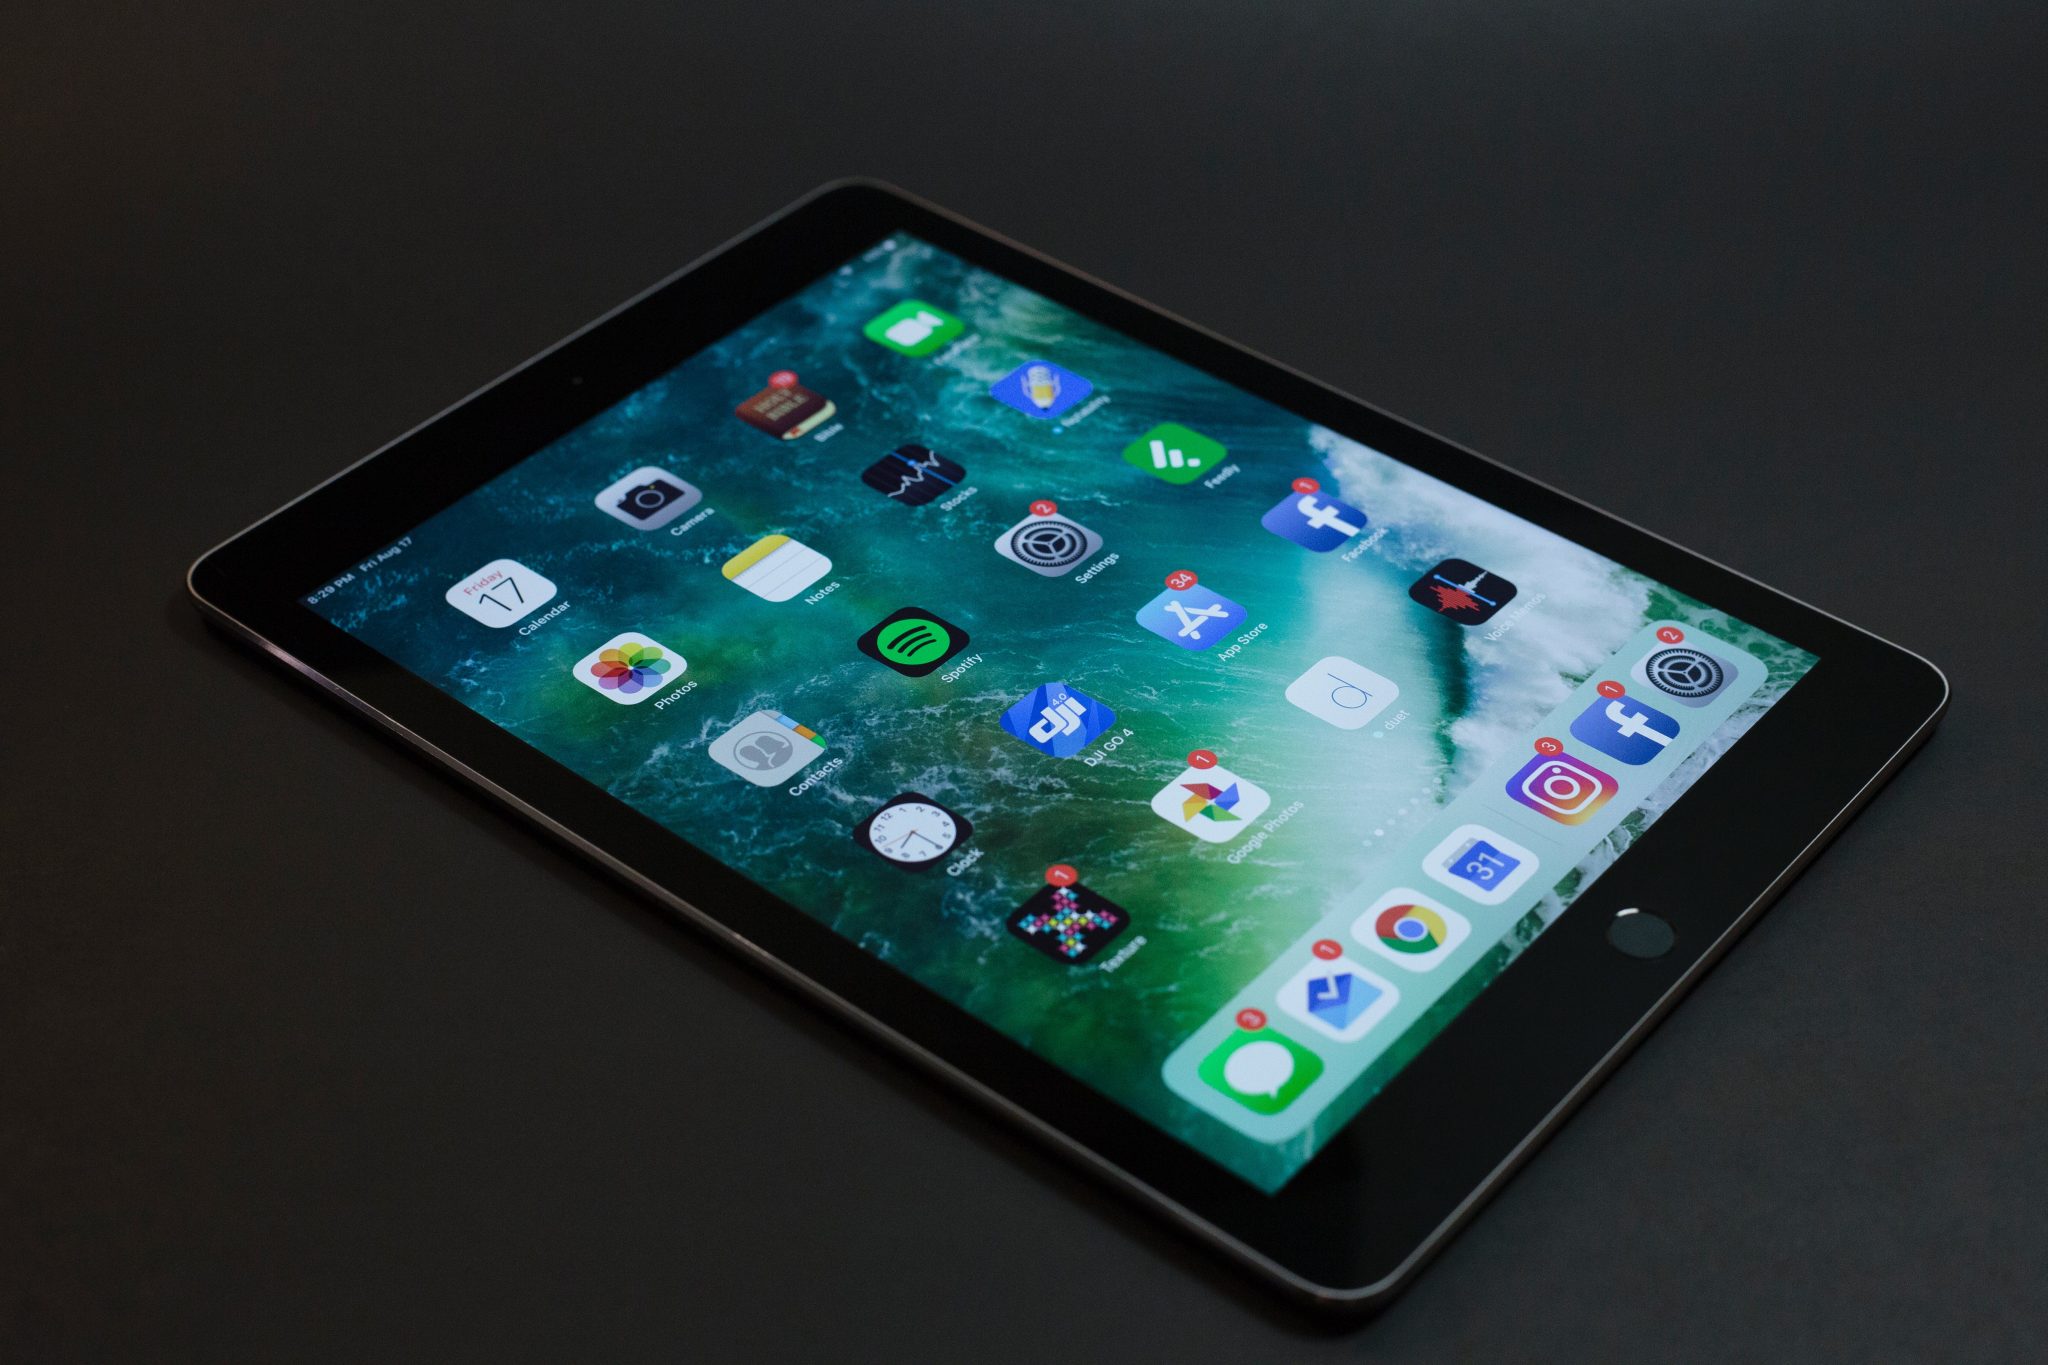 Tela do iPad, um dos produtos mais vendidos da história